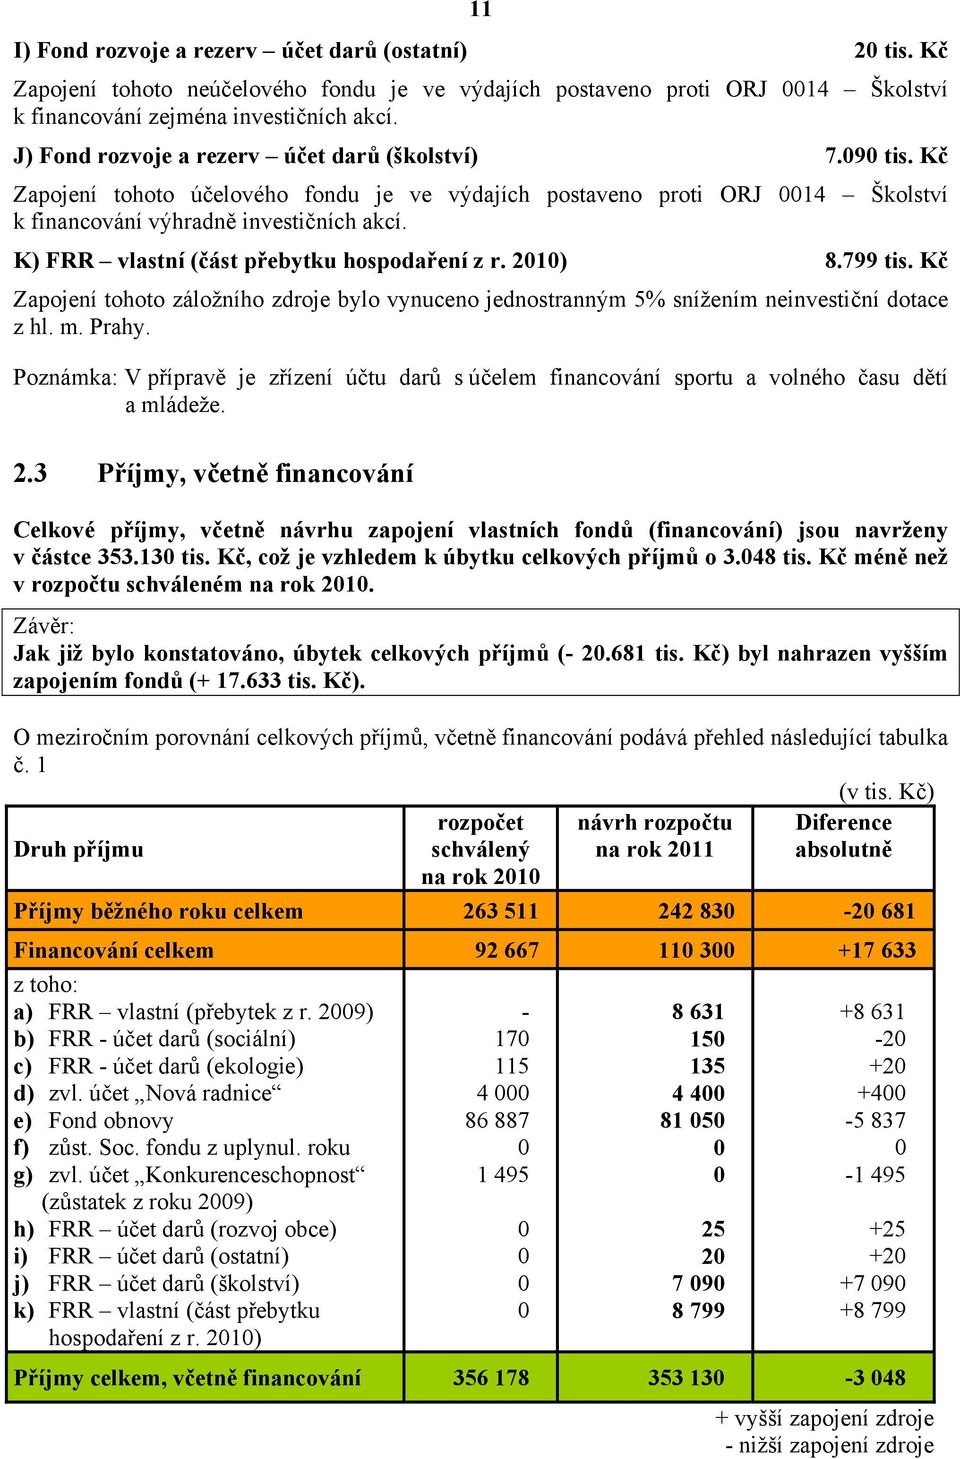 K) FRR vlastní (část přebytku hospodaření z r. 2010) 8.799 tis. Kč Zapojení tohoto záložního zdroje bylo vynuceno jednostranným 5% snížením neinvestiční dotace z hl. m. Prahy.